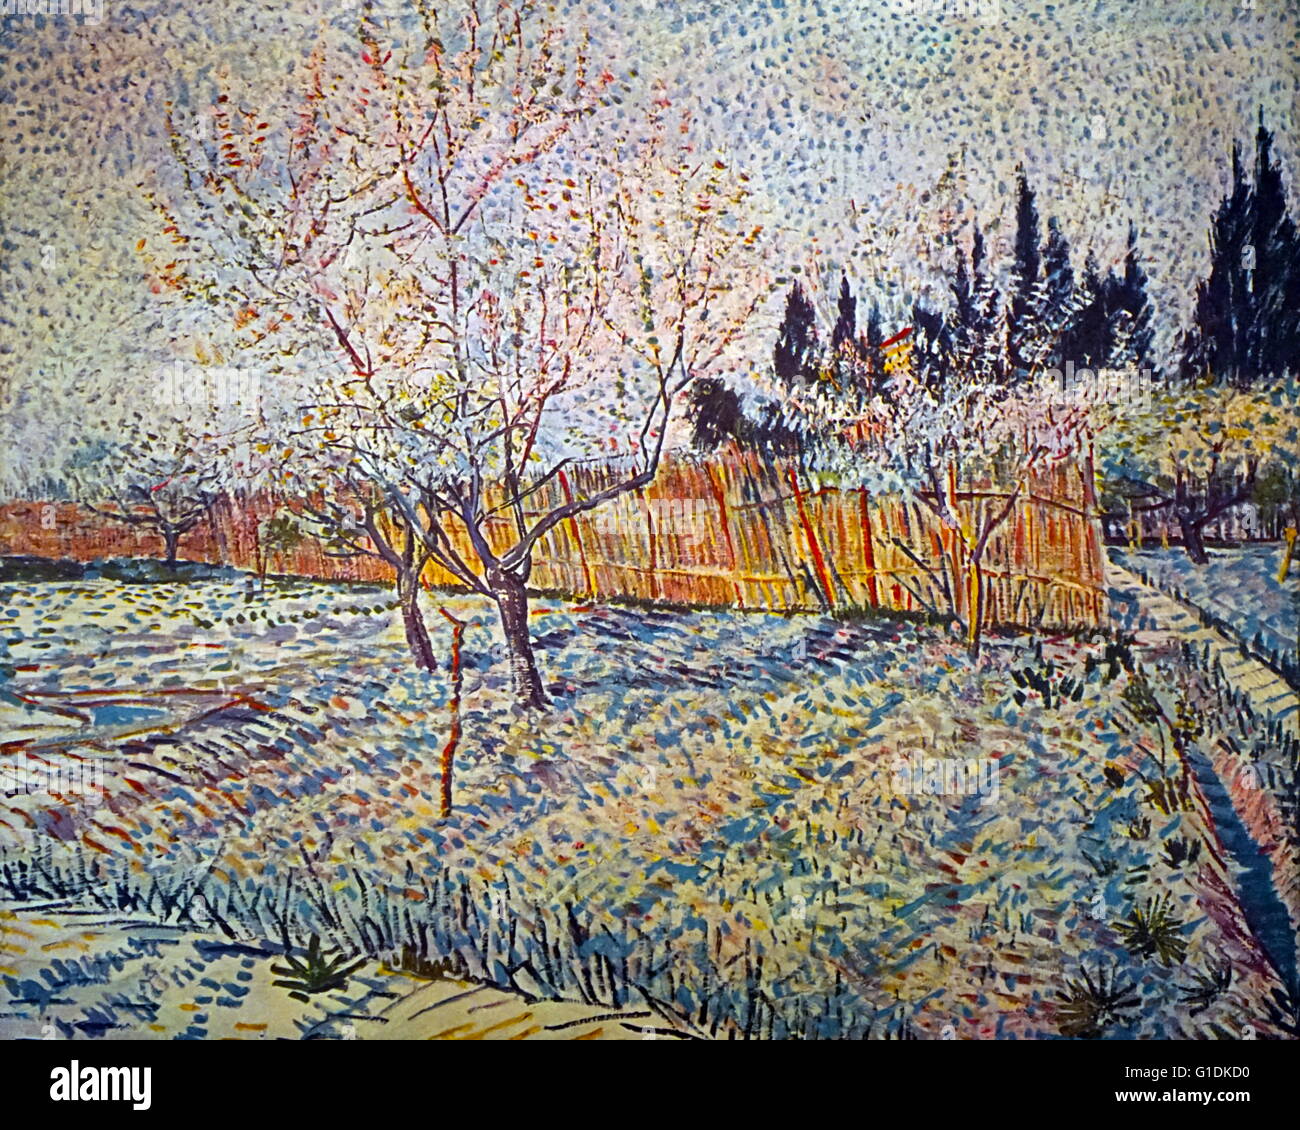 Vincent van Gogh (1853-1890) peintre post-impressionniste. Verger, printemps 1888, huile sur toile Banque D'Images